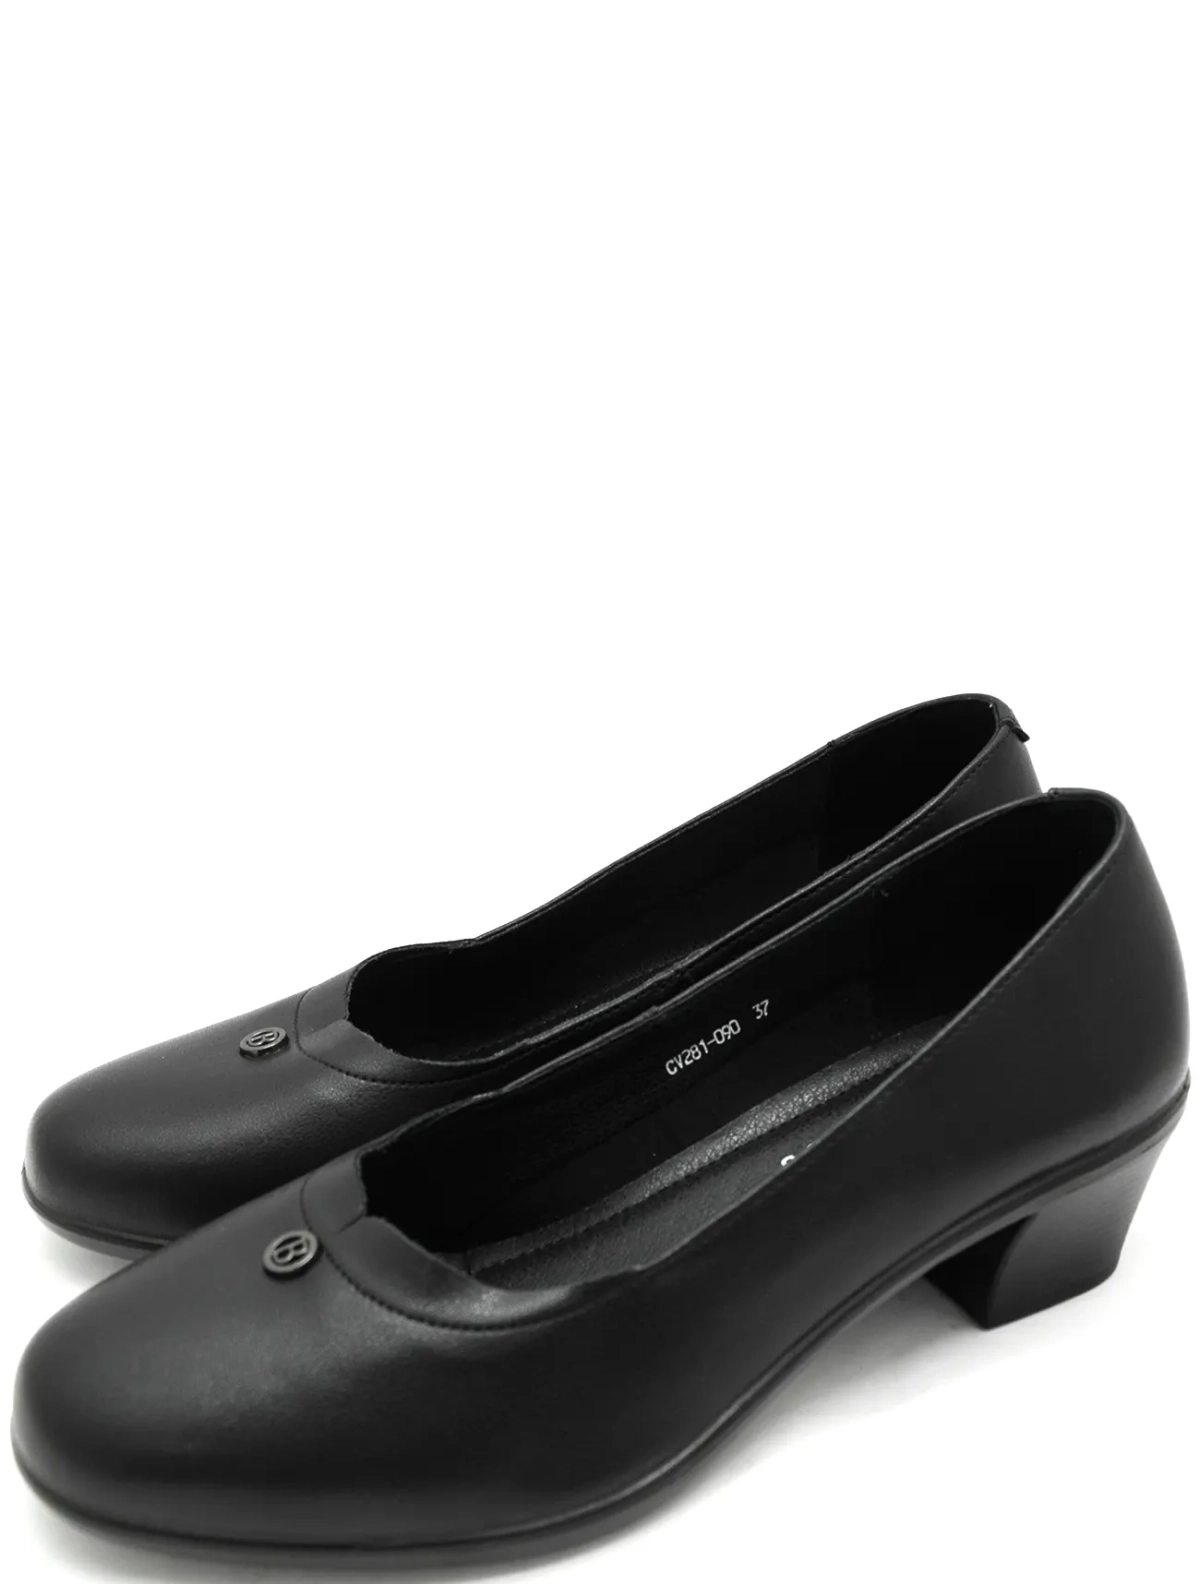 Baden CV281-090 женские туфли